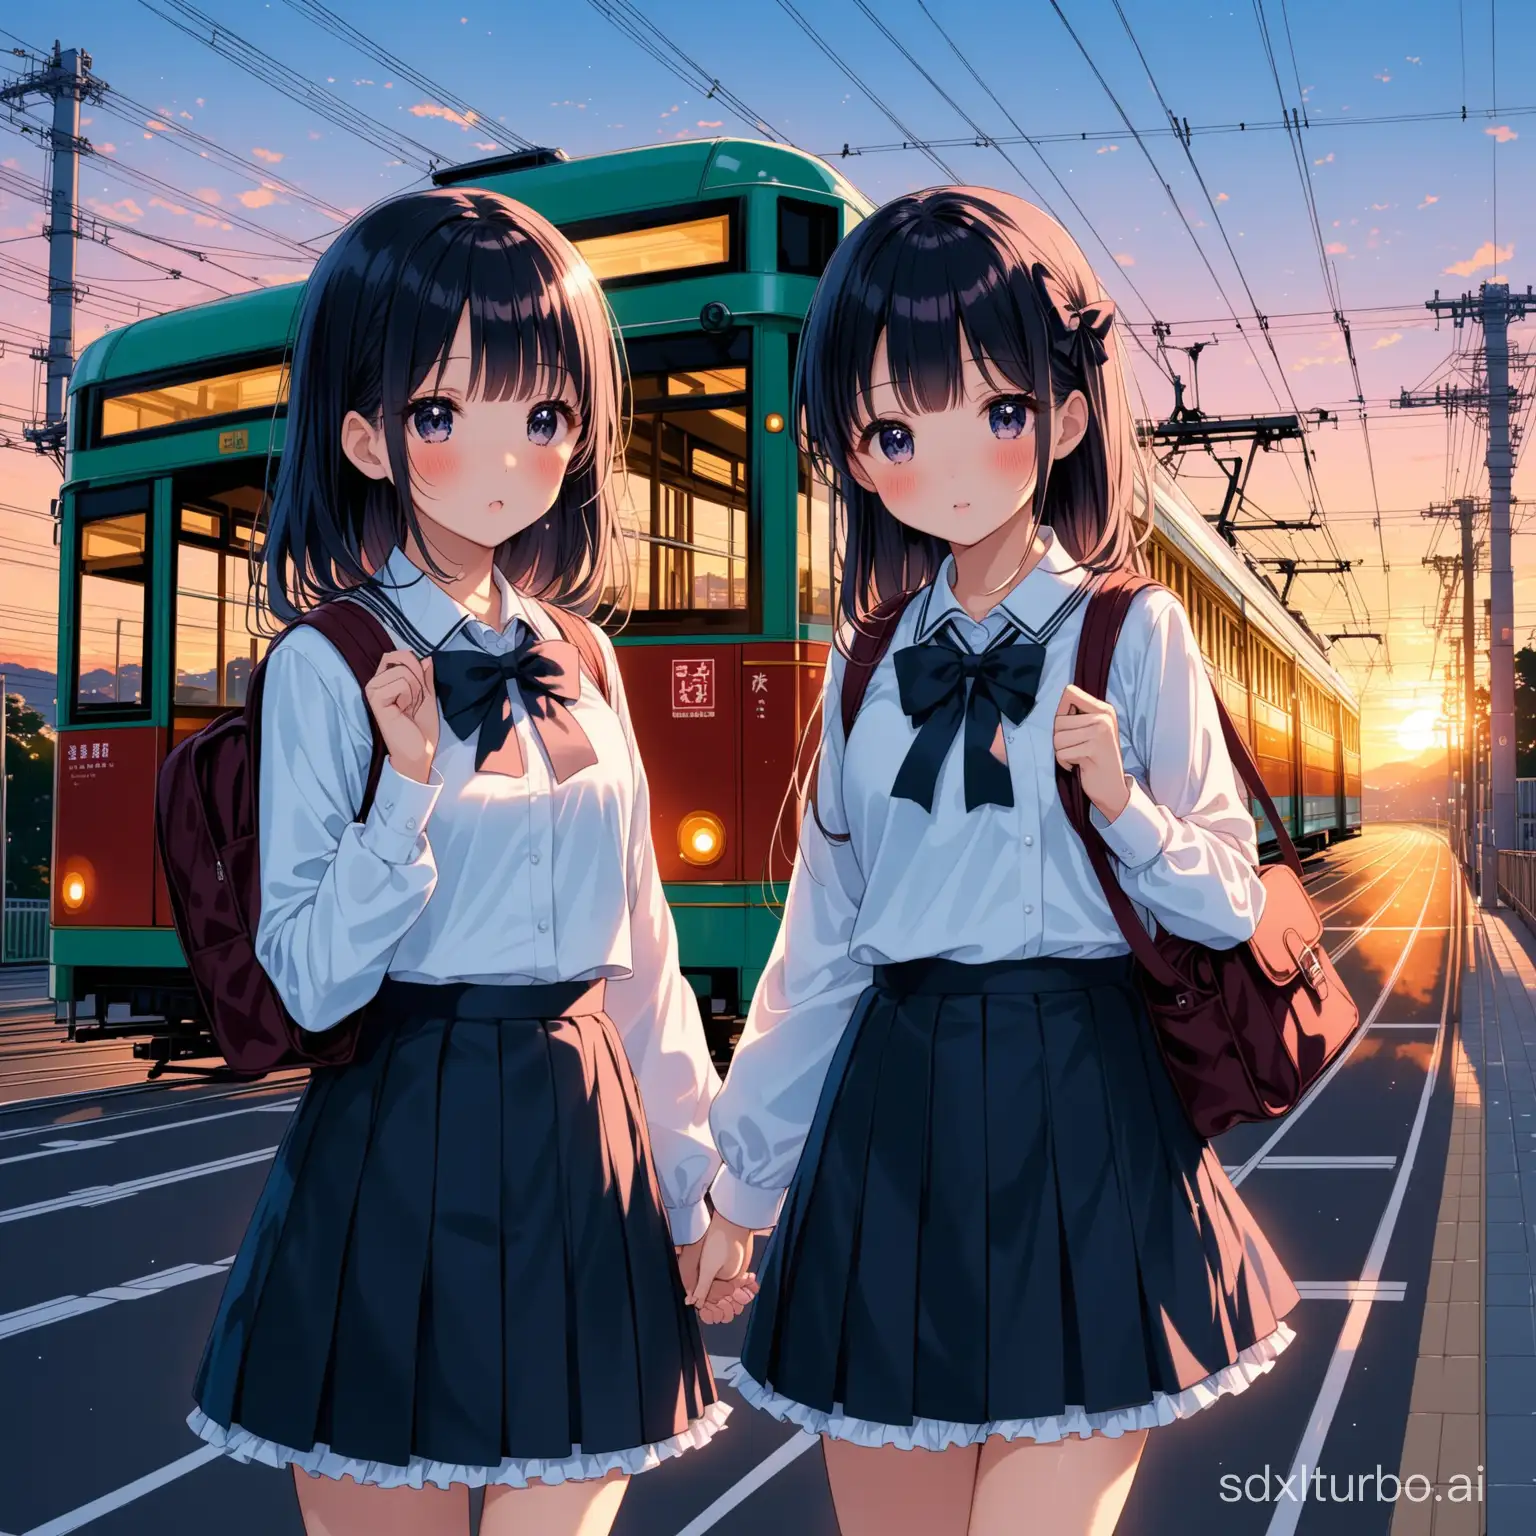 Japan streets dusk tram beautiful school uniforms lolita yuri elementary school students two people